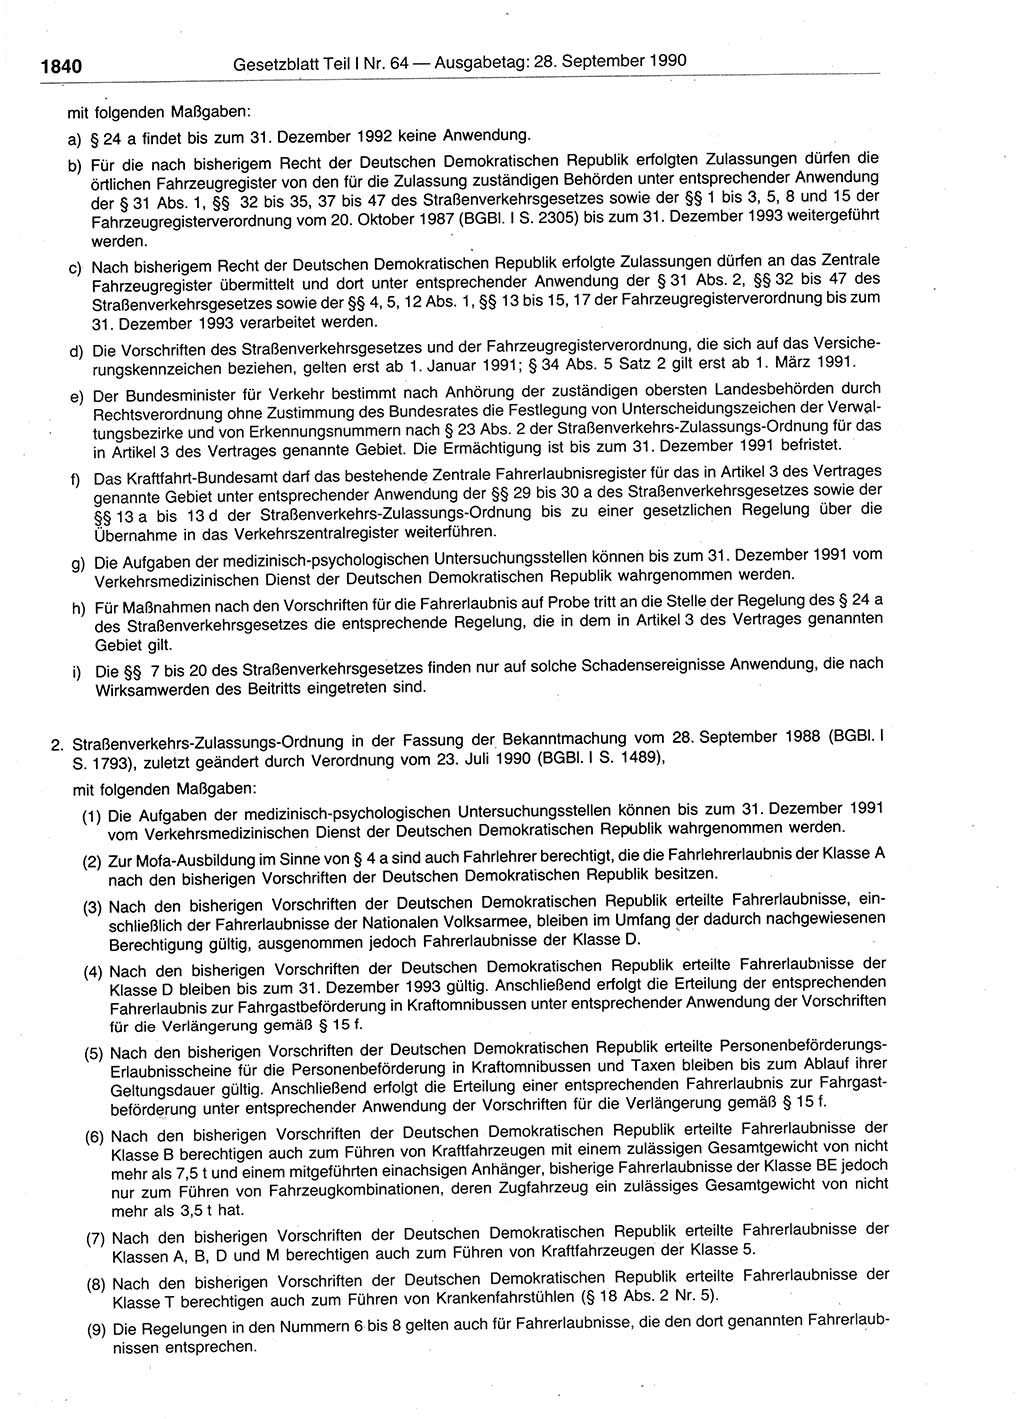 Gesetzblatt (GBl.) der Deutschen Demokratischen Republik (DDR) Teil Ⅰ 1990, Seite 1840 (GBl. DDR Ⅰ 1990, S. 1840)